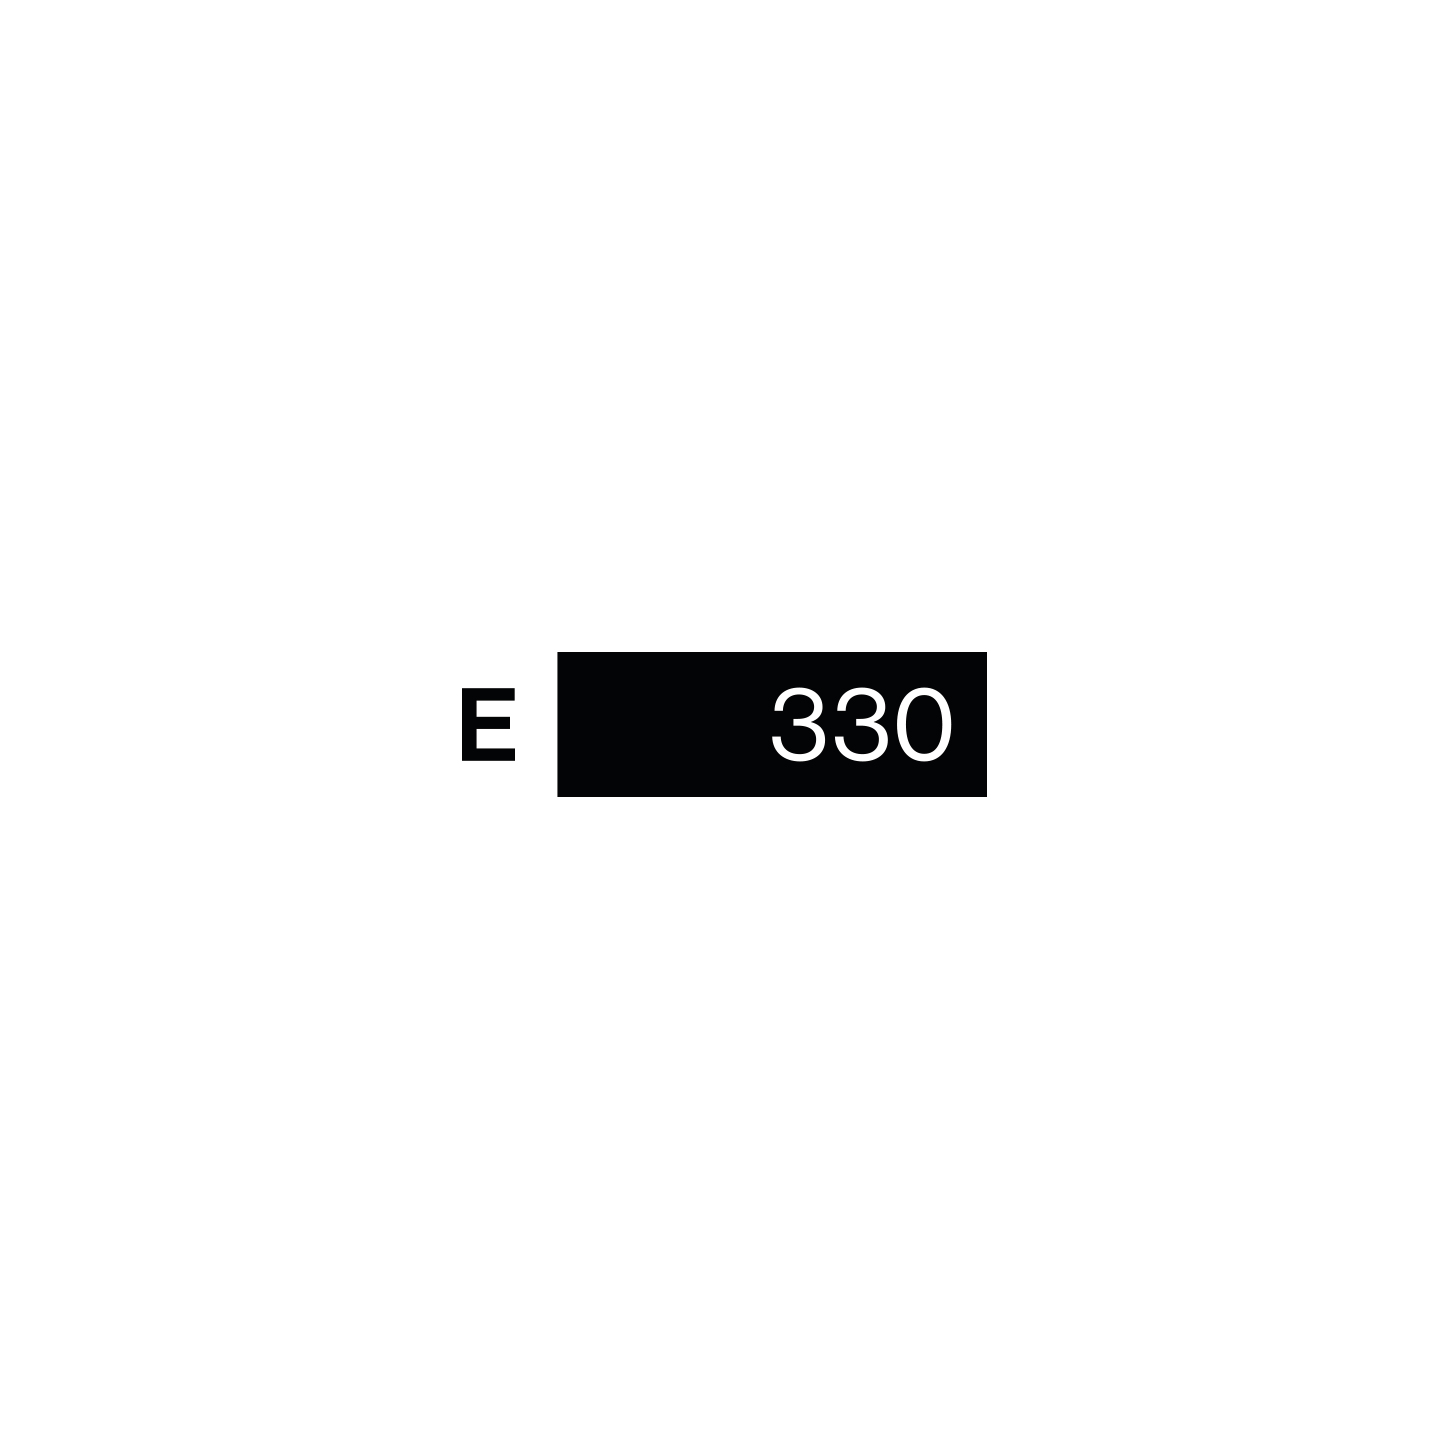 E-330 Subculture Store